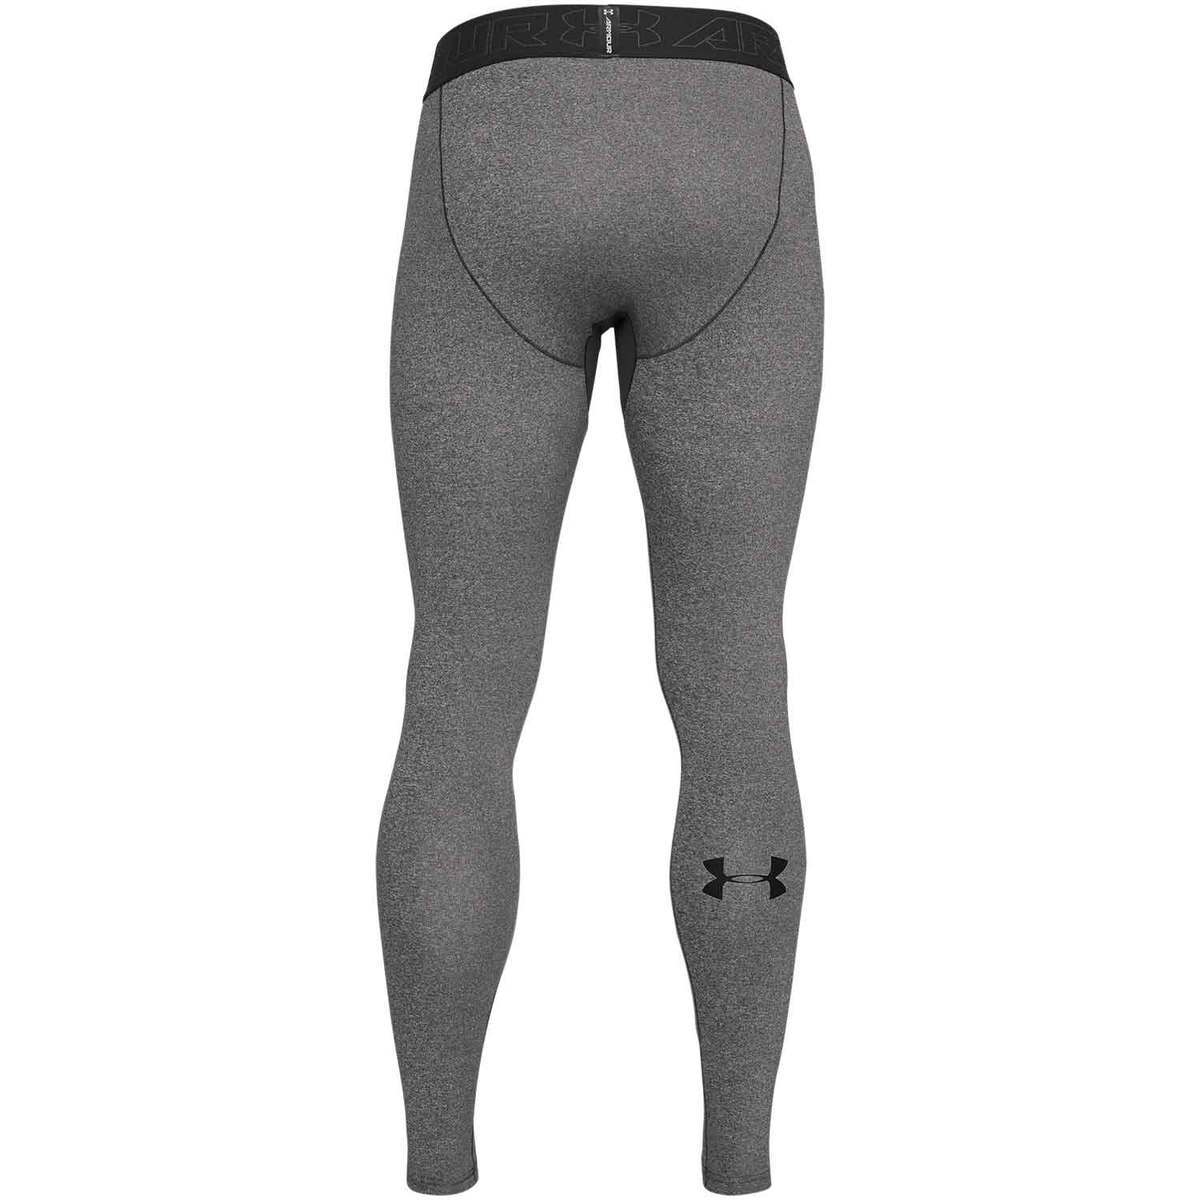 DEVOPS 2 or 3 Pack Men's Thermal Compression Pants, Athletic Leggings Base  Layer Bottoms